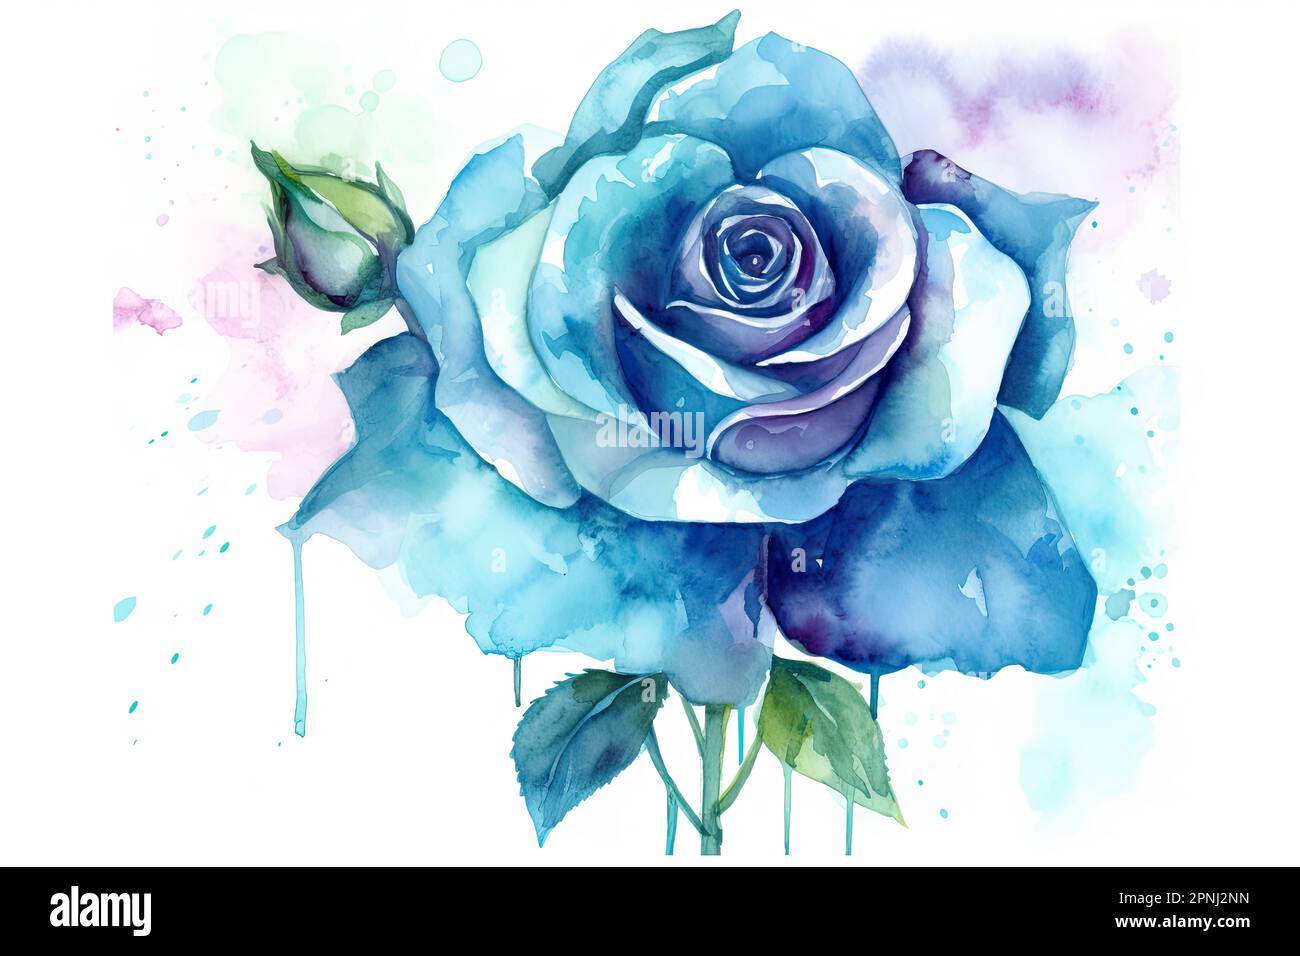 Entwerfen Sie ein atemberaubendes Aquarell mit einer blauen Rose in leuchtenden und kräftigen Farben, die sich von einem weißen Hintergrund abheben Stockfoto